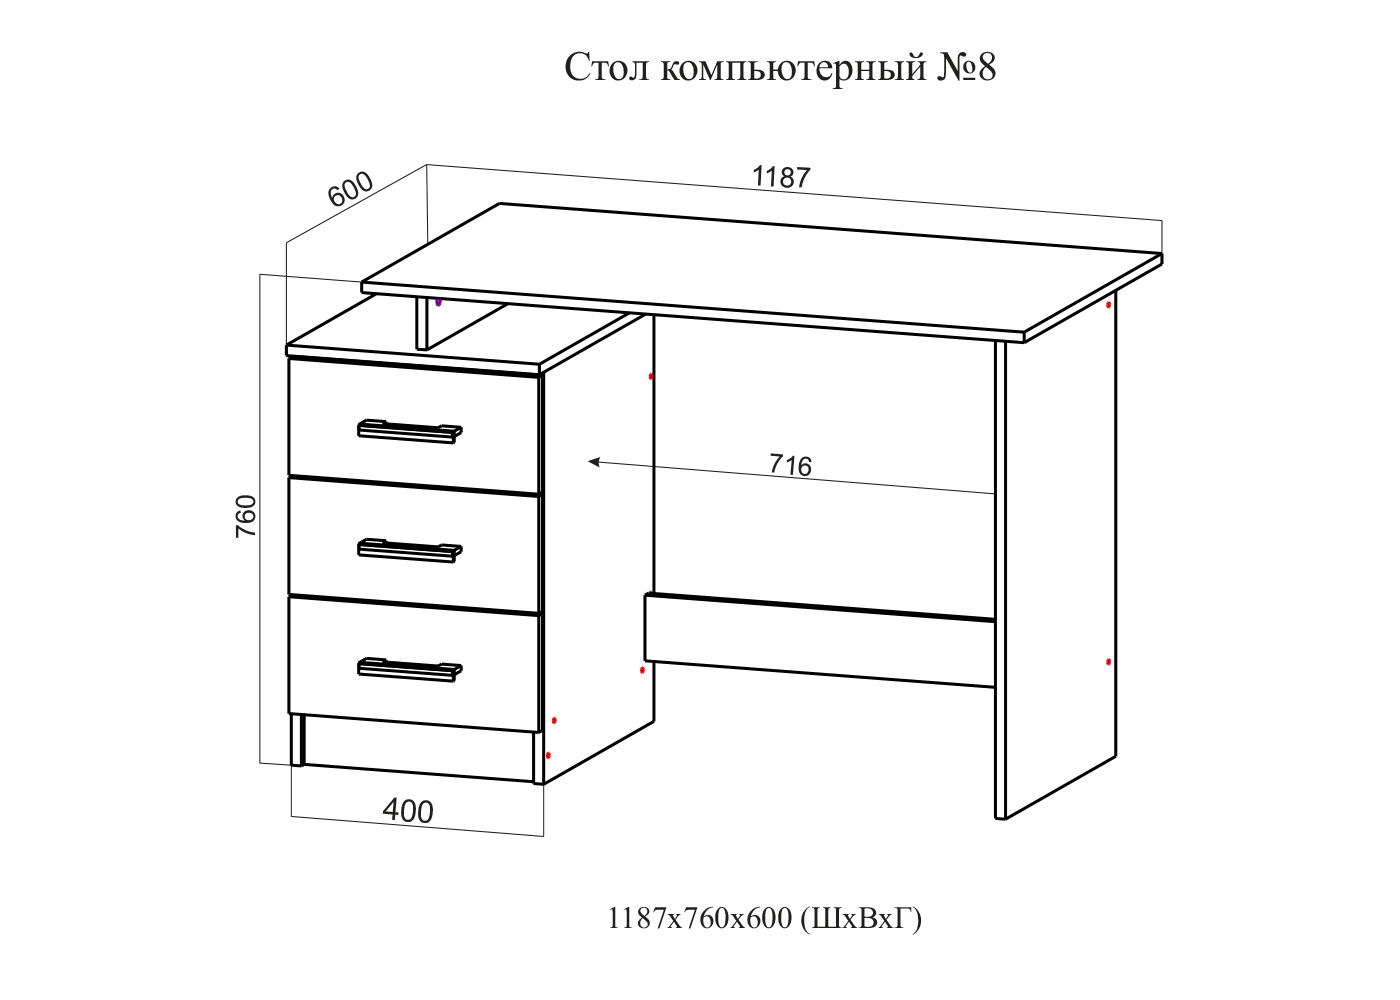 Стандартные размеры компьютерного стола